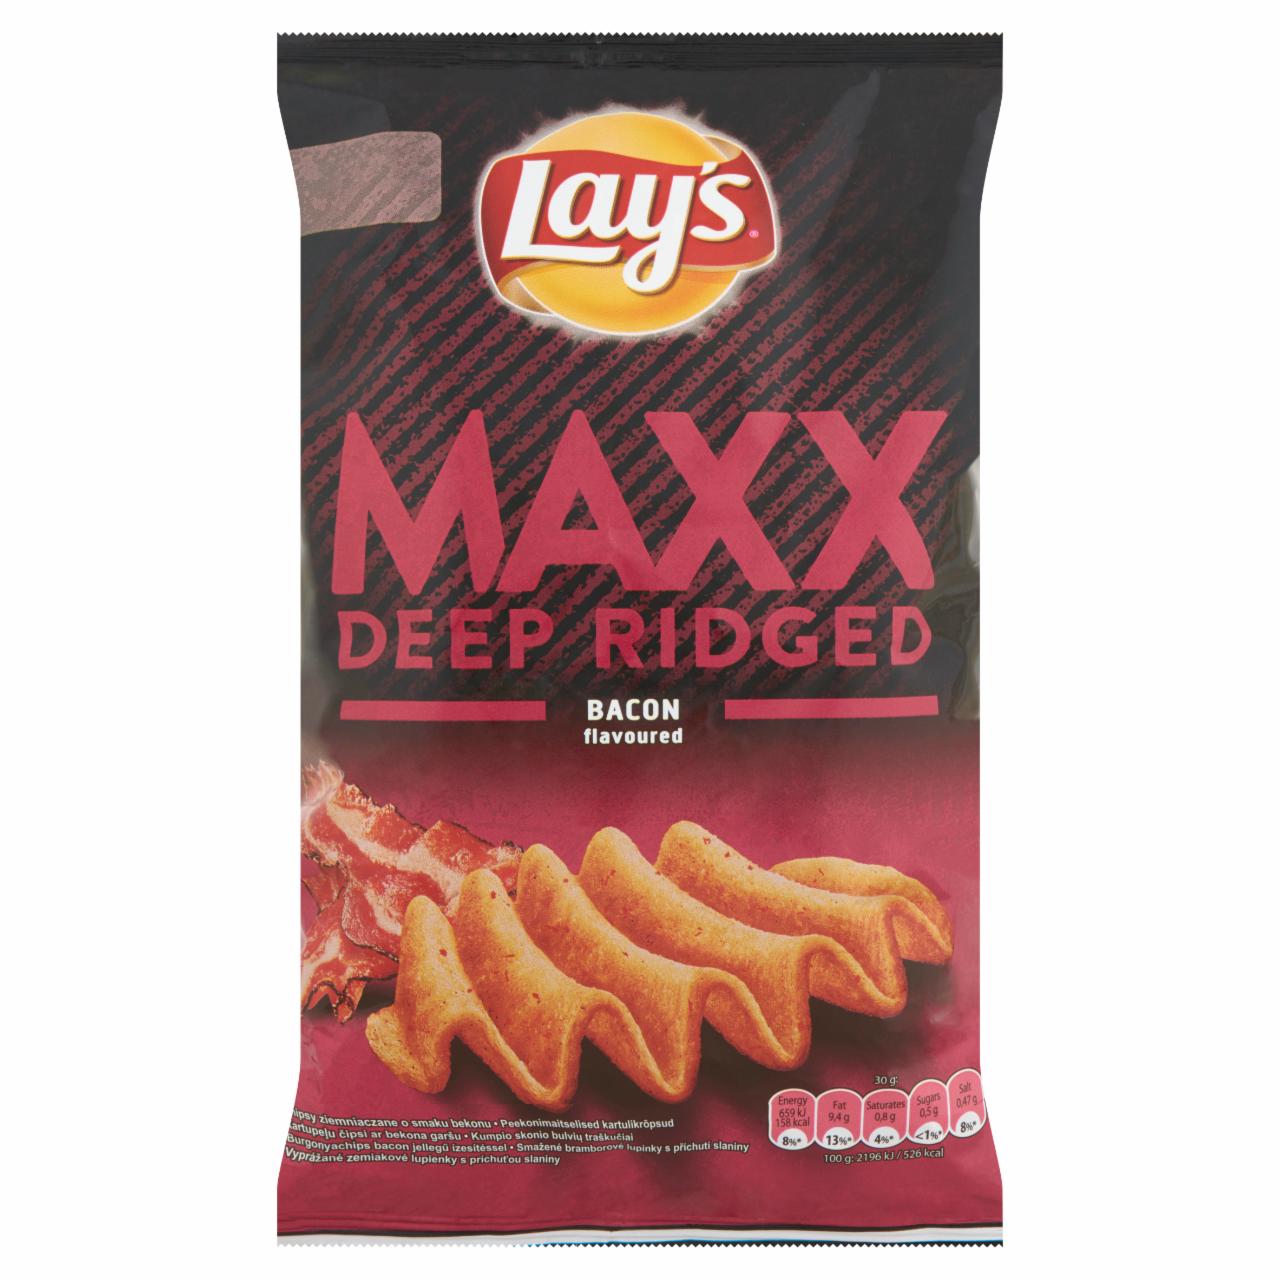 Képek - Lay's Maxx burgonyachips bacon jellegű ízesítéssel 65 g